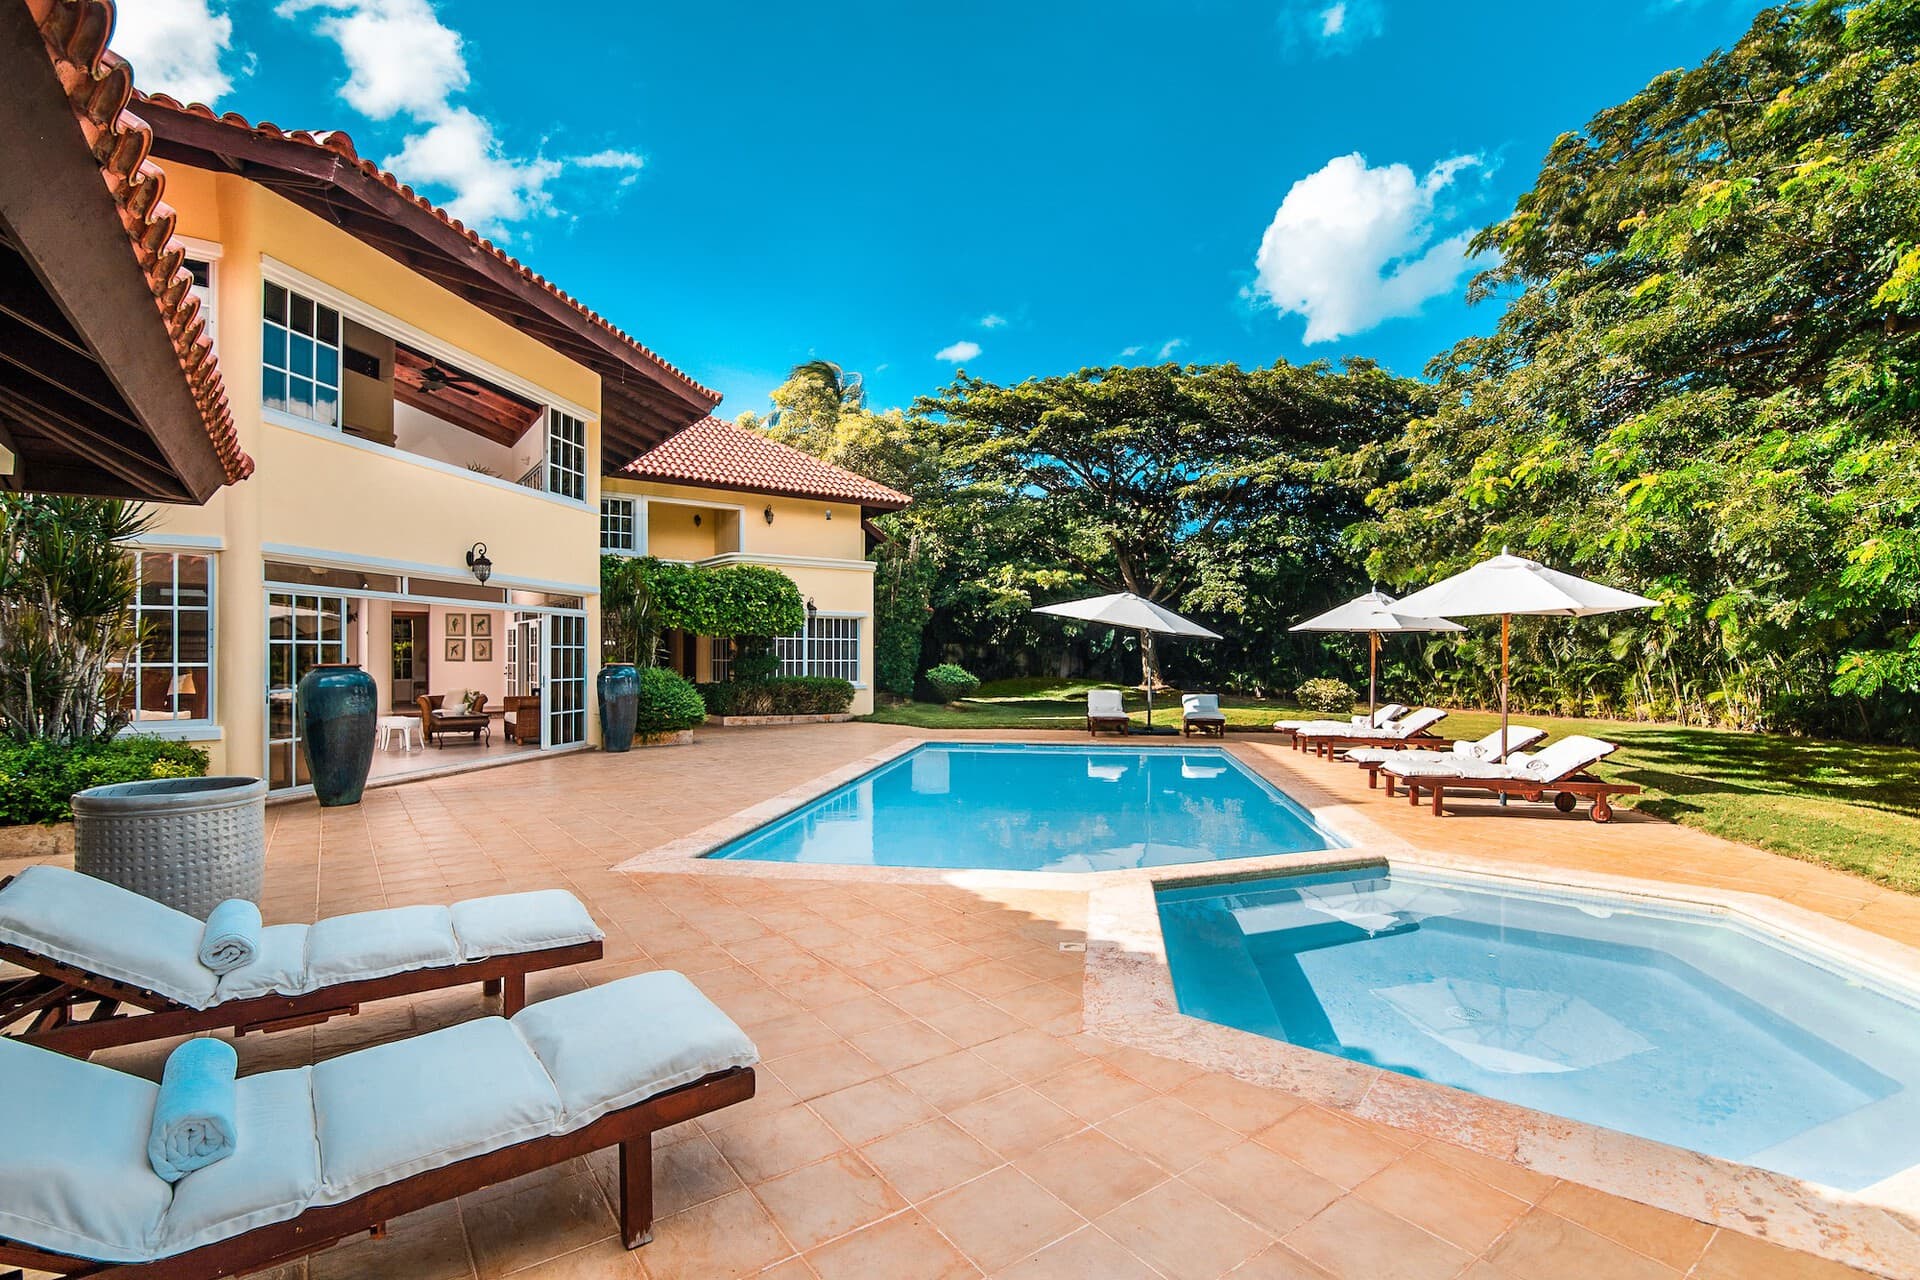 All-inclusive Villas in the Dominican Republic